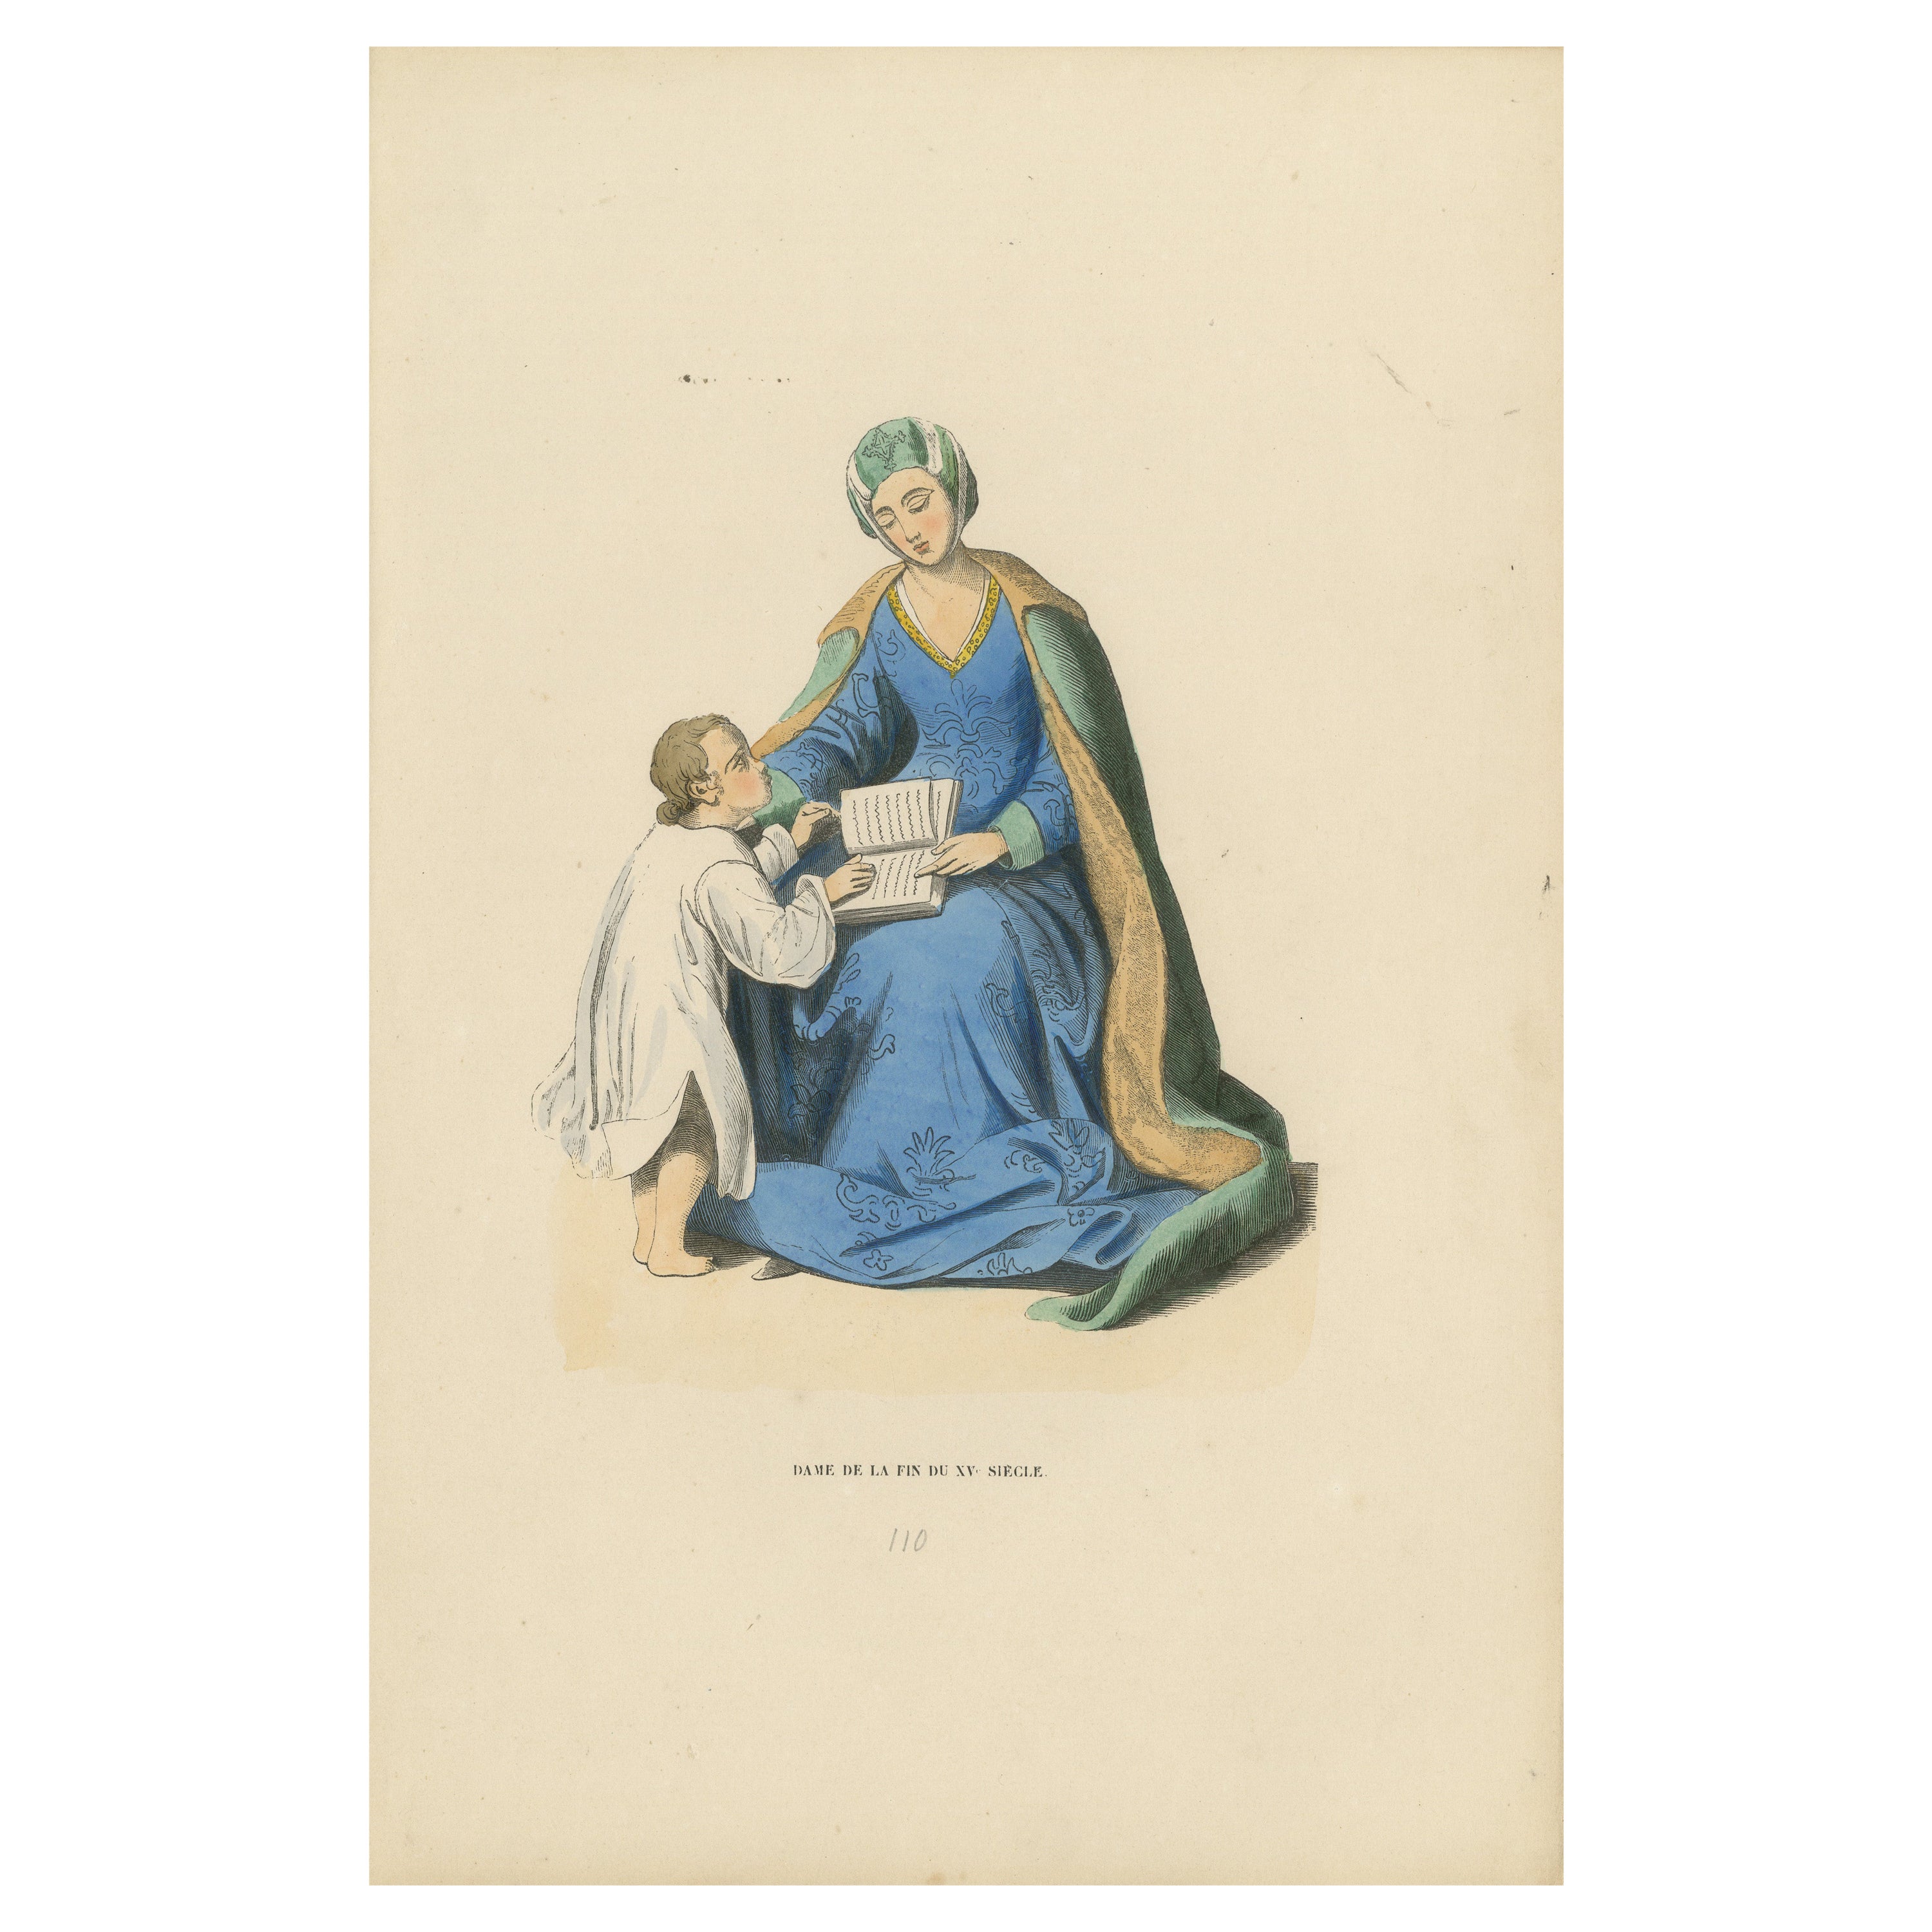 Mütterlicher Unterricht im 15. Jahrhundert: Eine Adlige unterrichtet ein Kind, 1847